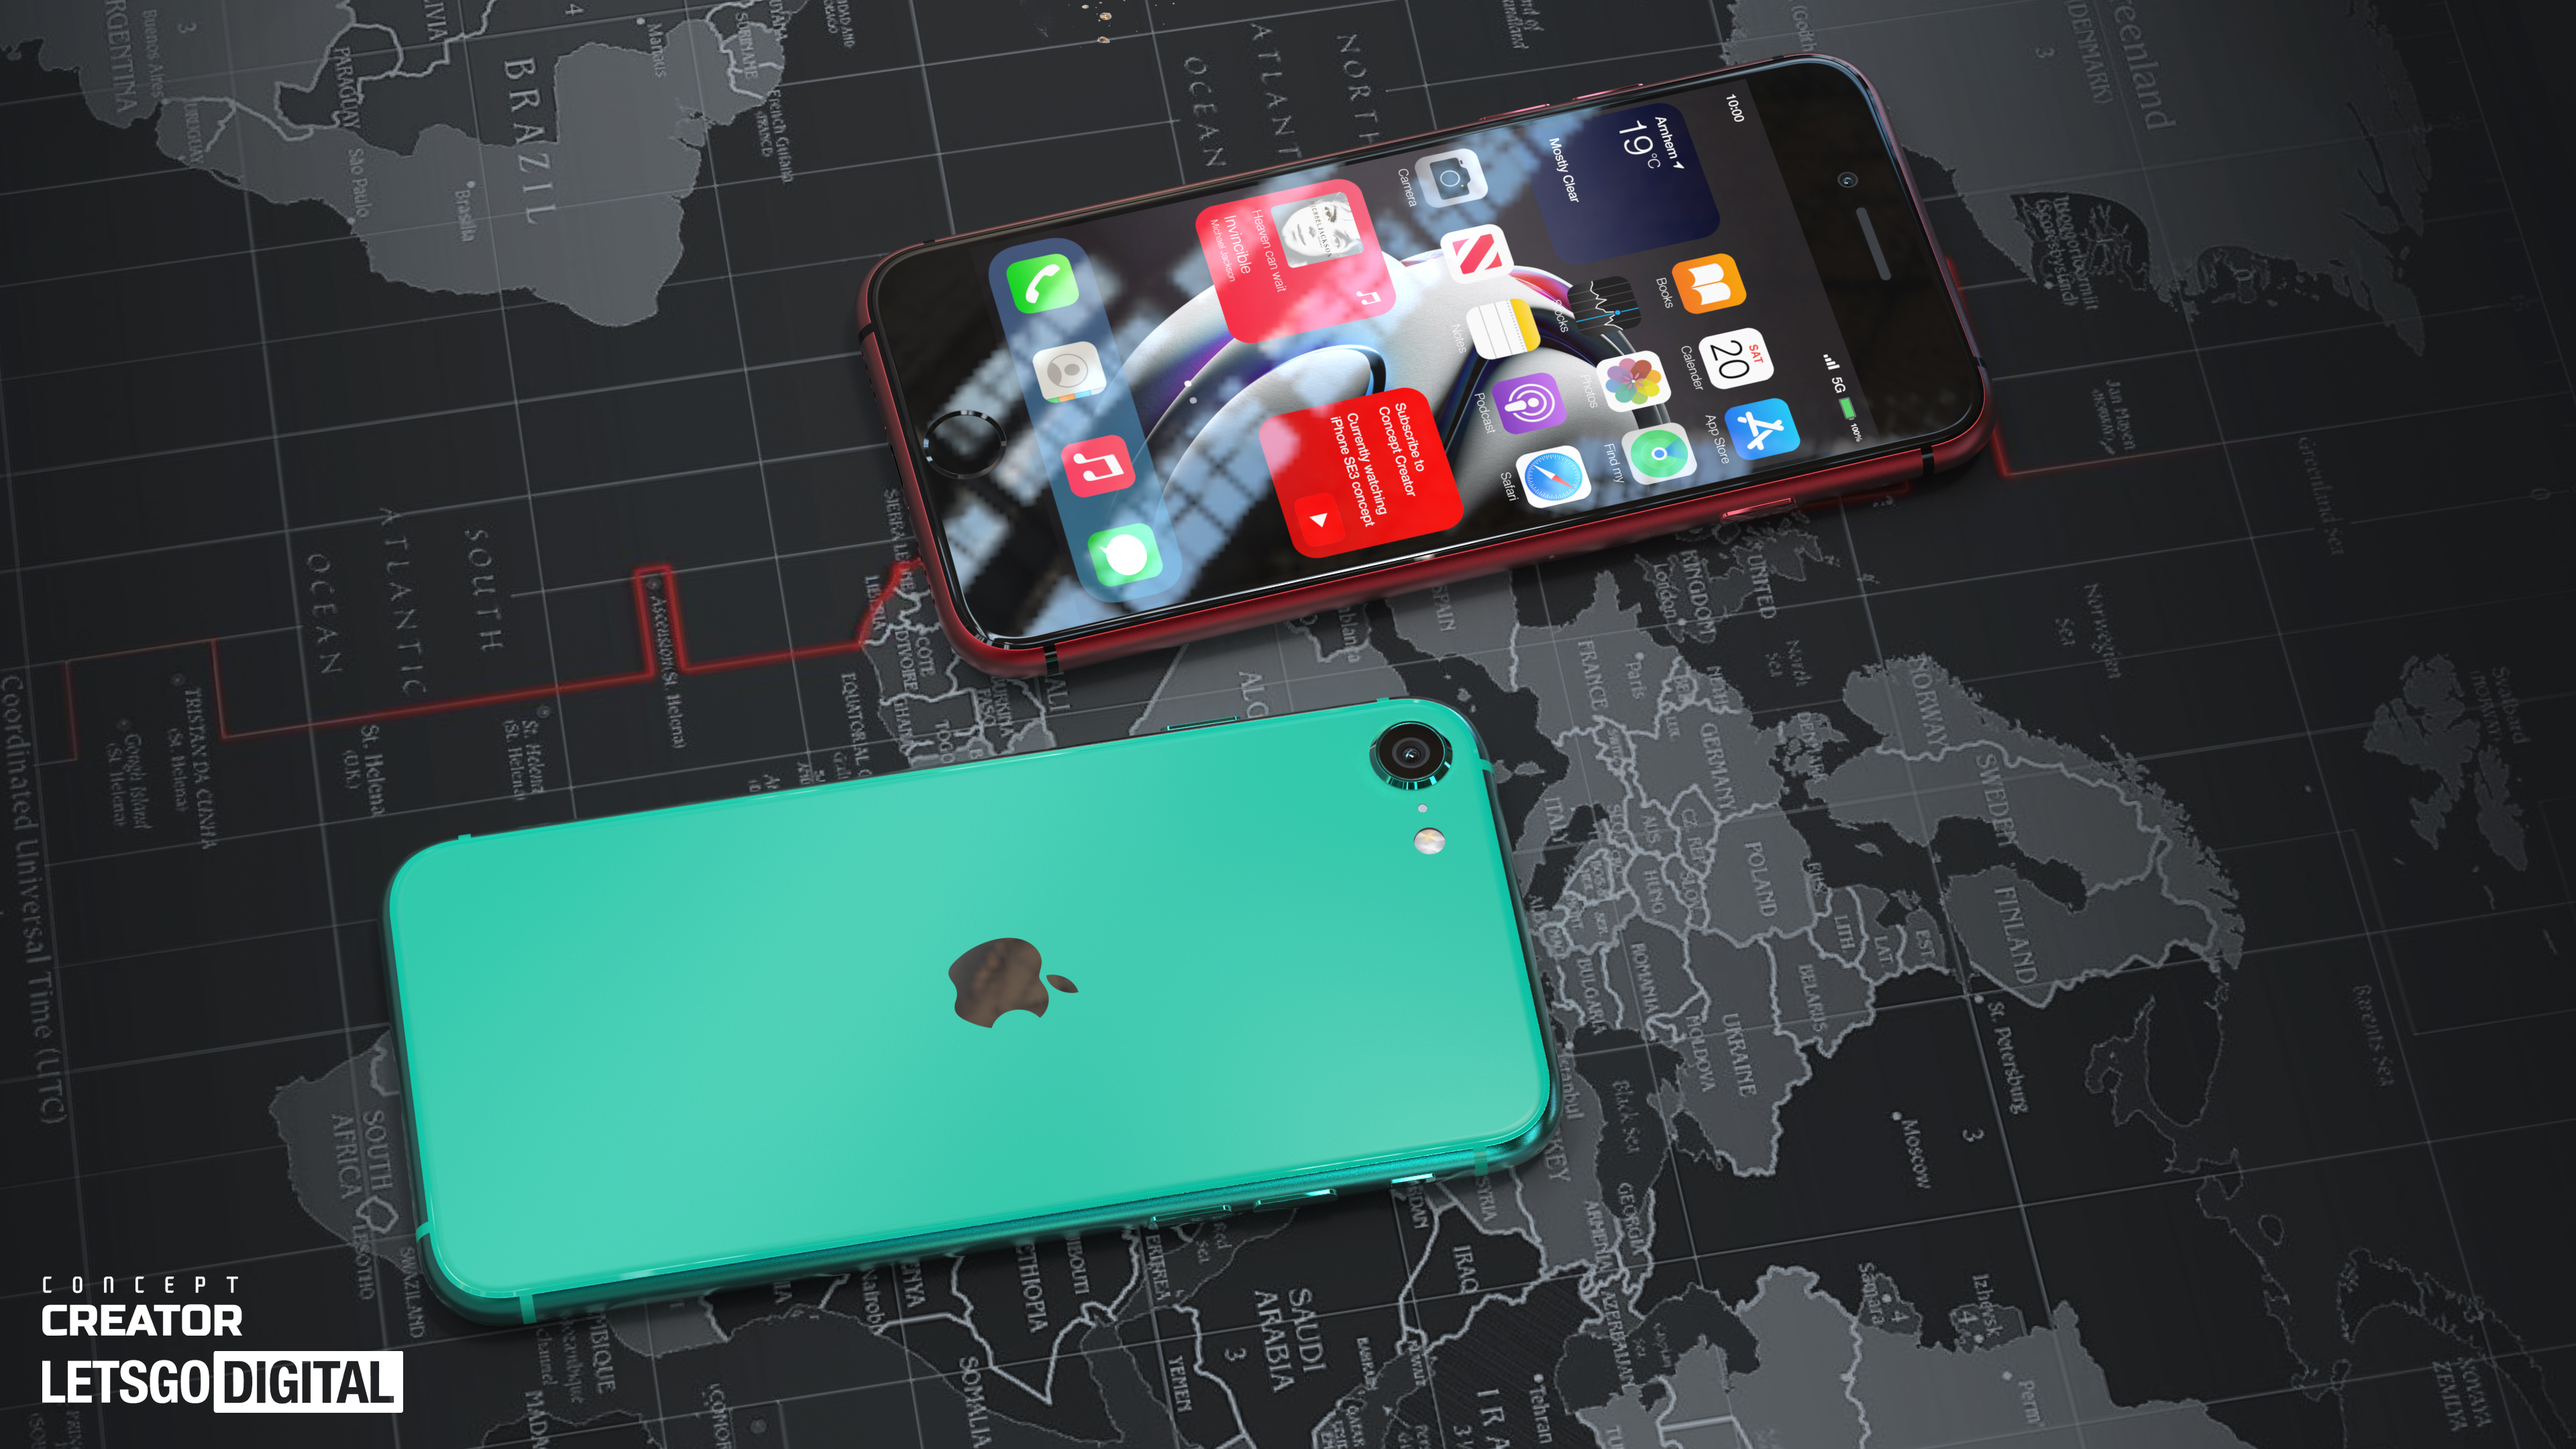 Il nuovo iPhone SE mostrato sui render: lo smartphone Apple più economico con supporto al 5G